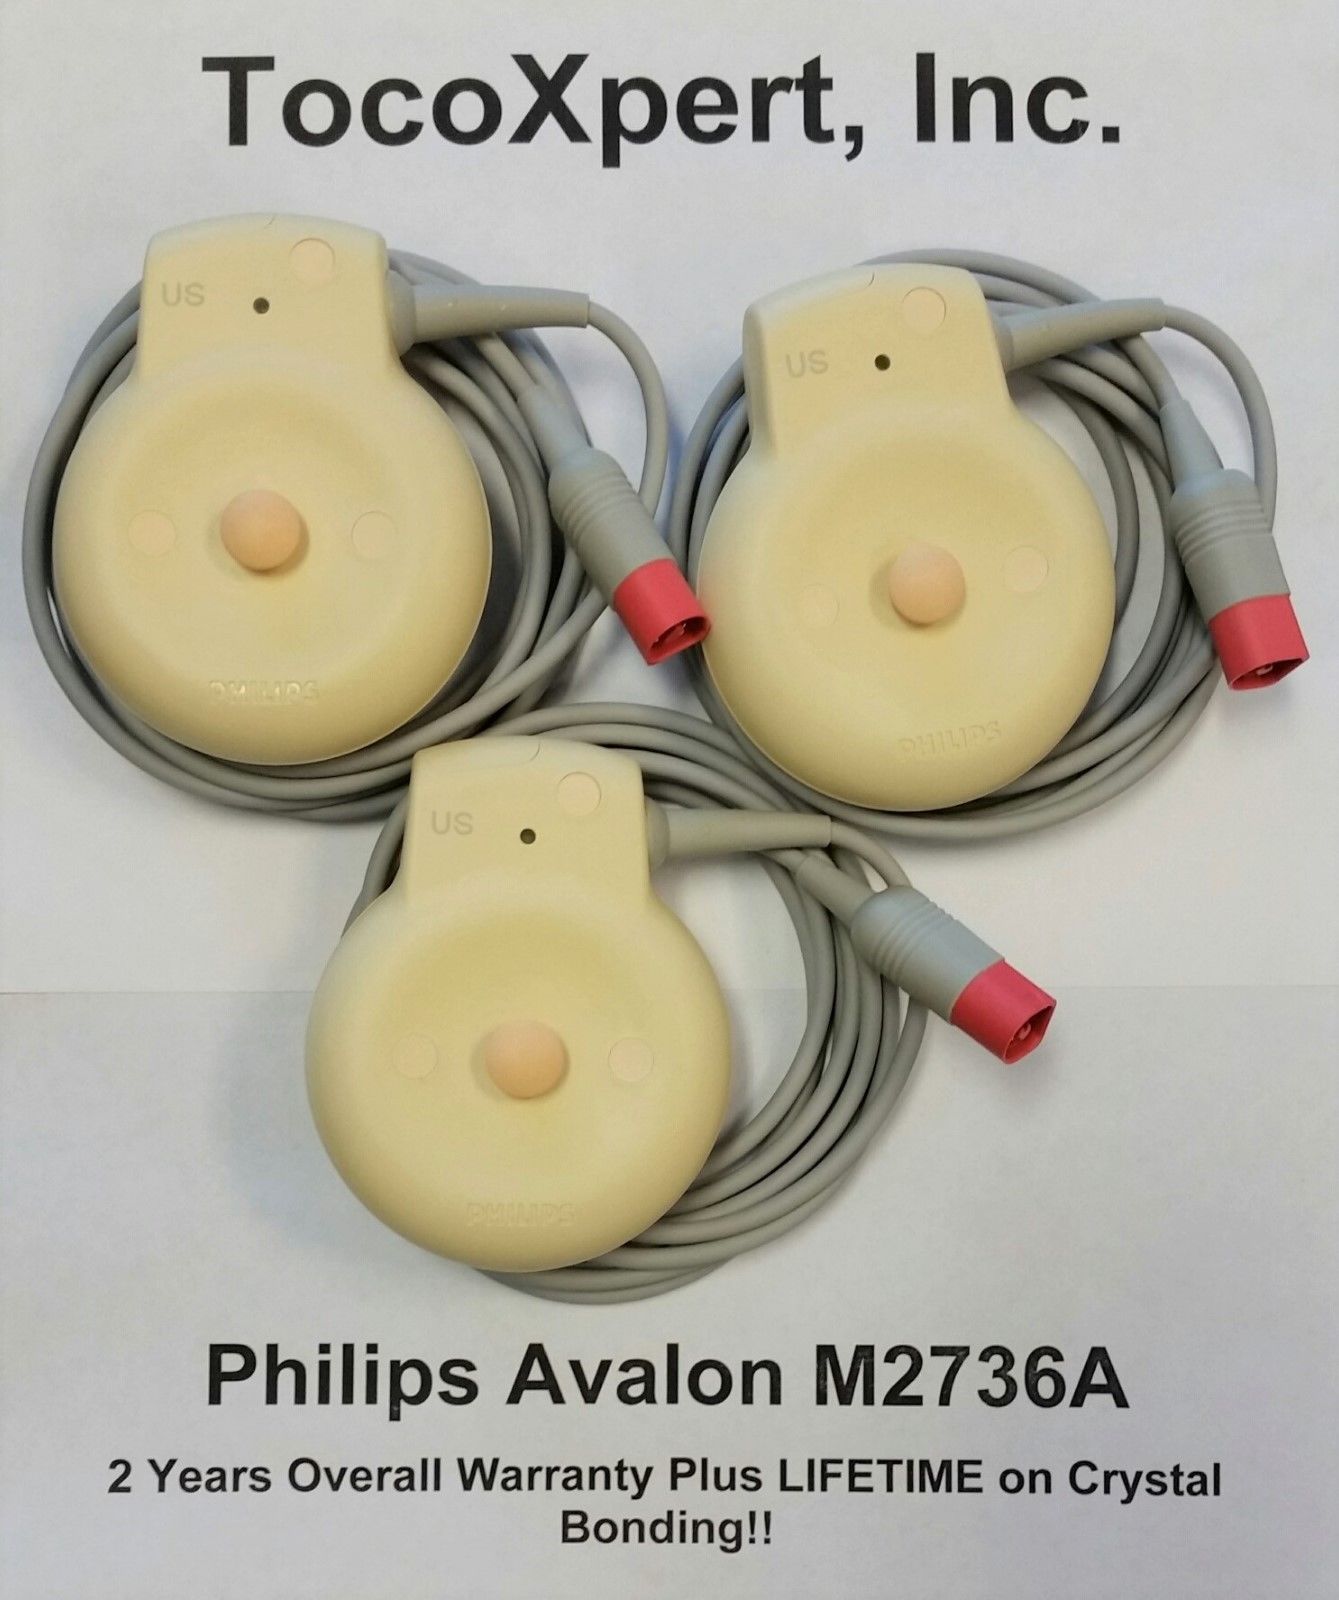 Philips M2736A Avalon Ultrasound Transducer $1189 - LIFETIME Warranty! Brand New